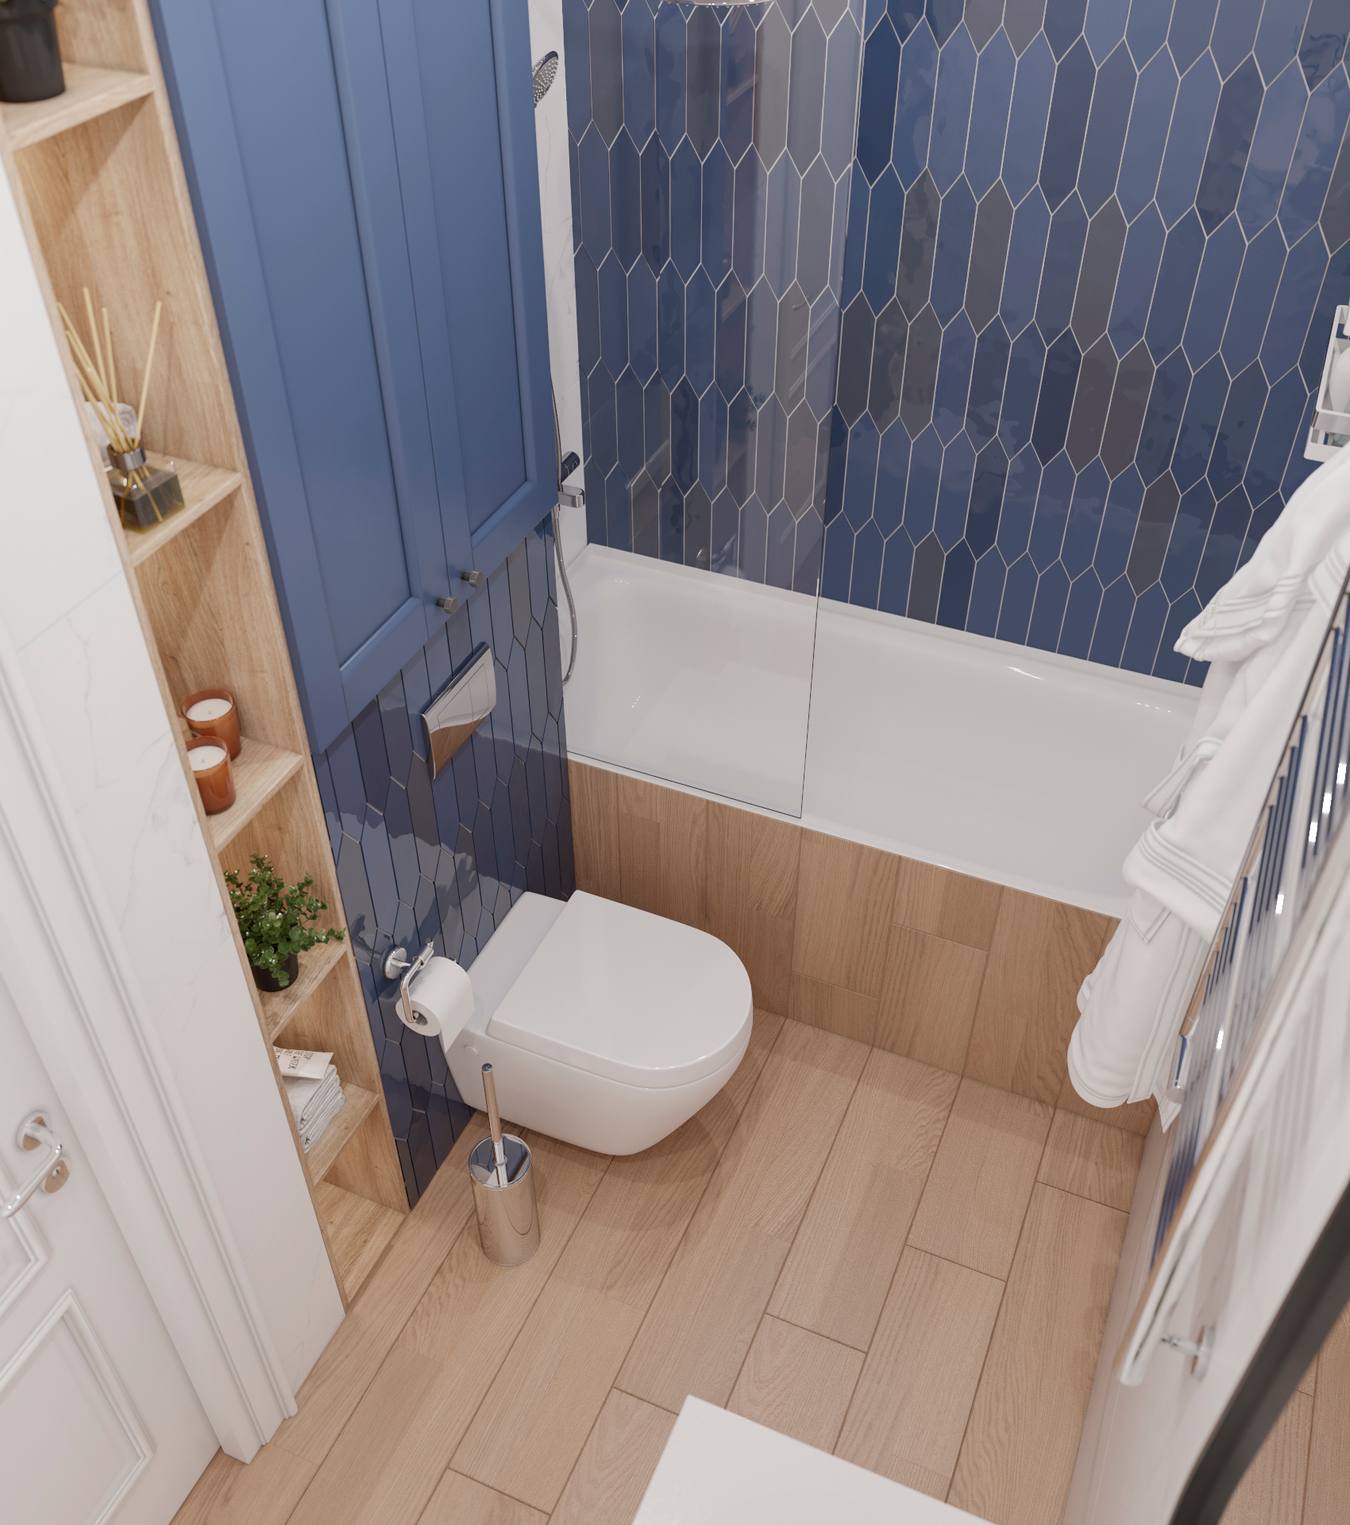 Phòng tắm được chụp từ trên cao cho thấy bố cục tổng thể cũng như màu sắc hài hòa giữa xanh lam, trắng, gỗ,... hệ thống kệ mở tận dụng hốc tường ốp gỗ sáng màu để lưu trữ và trang trí đẹp mắt.